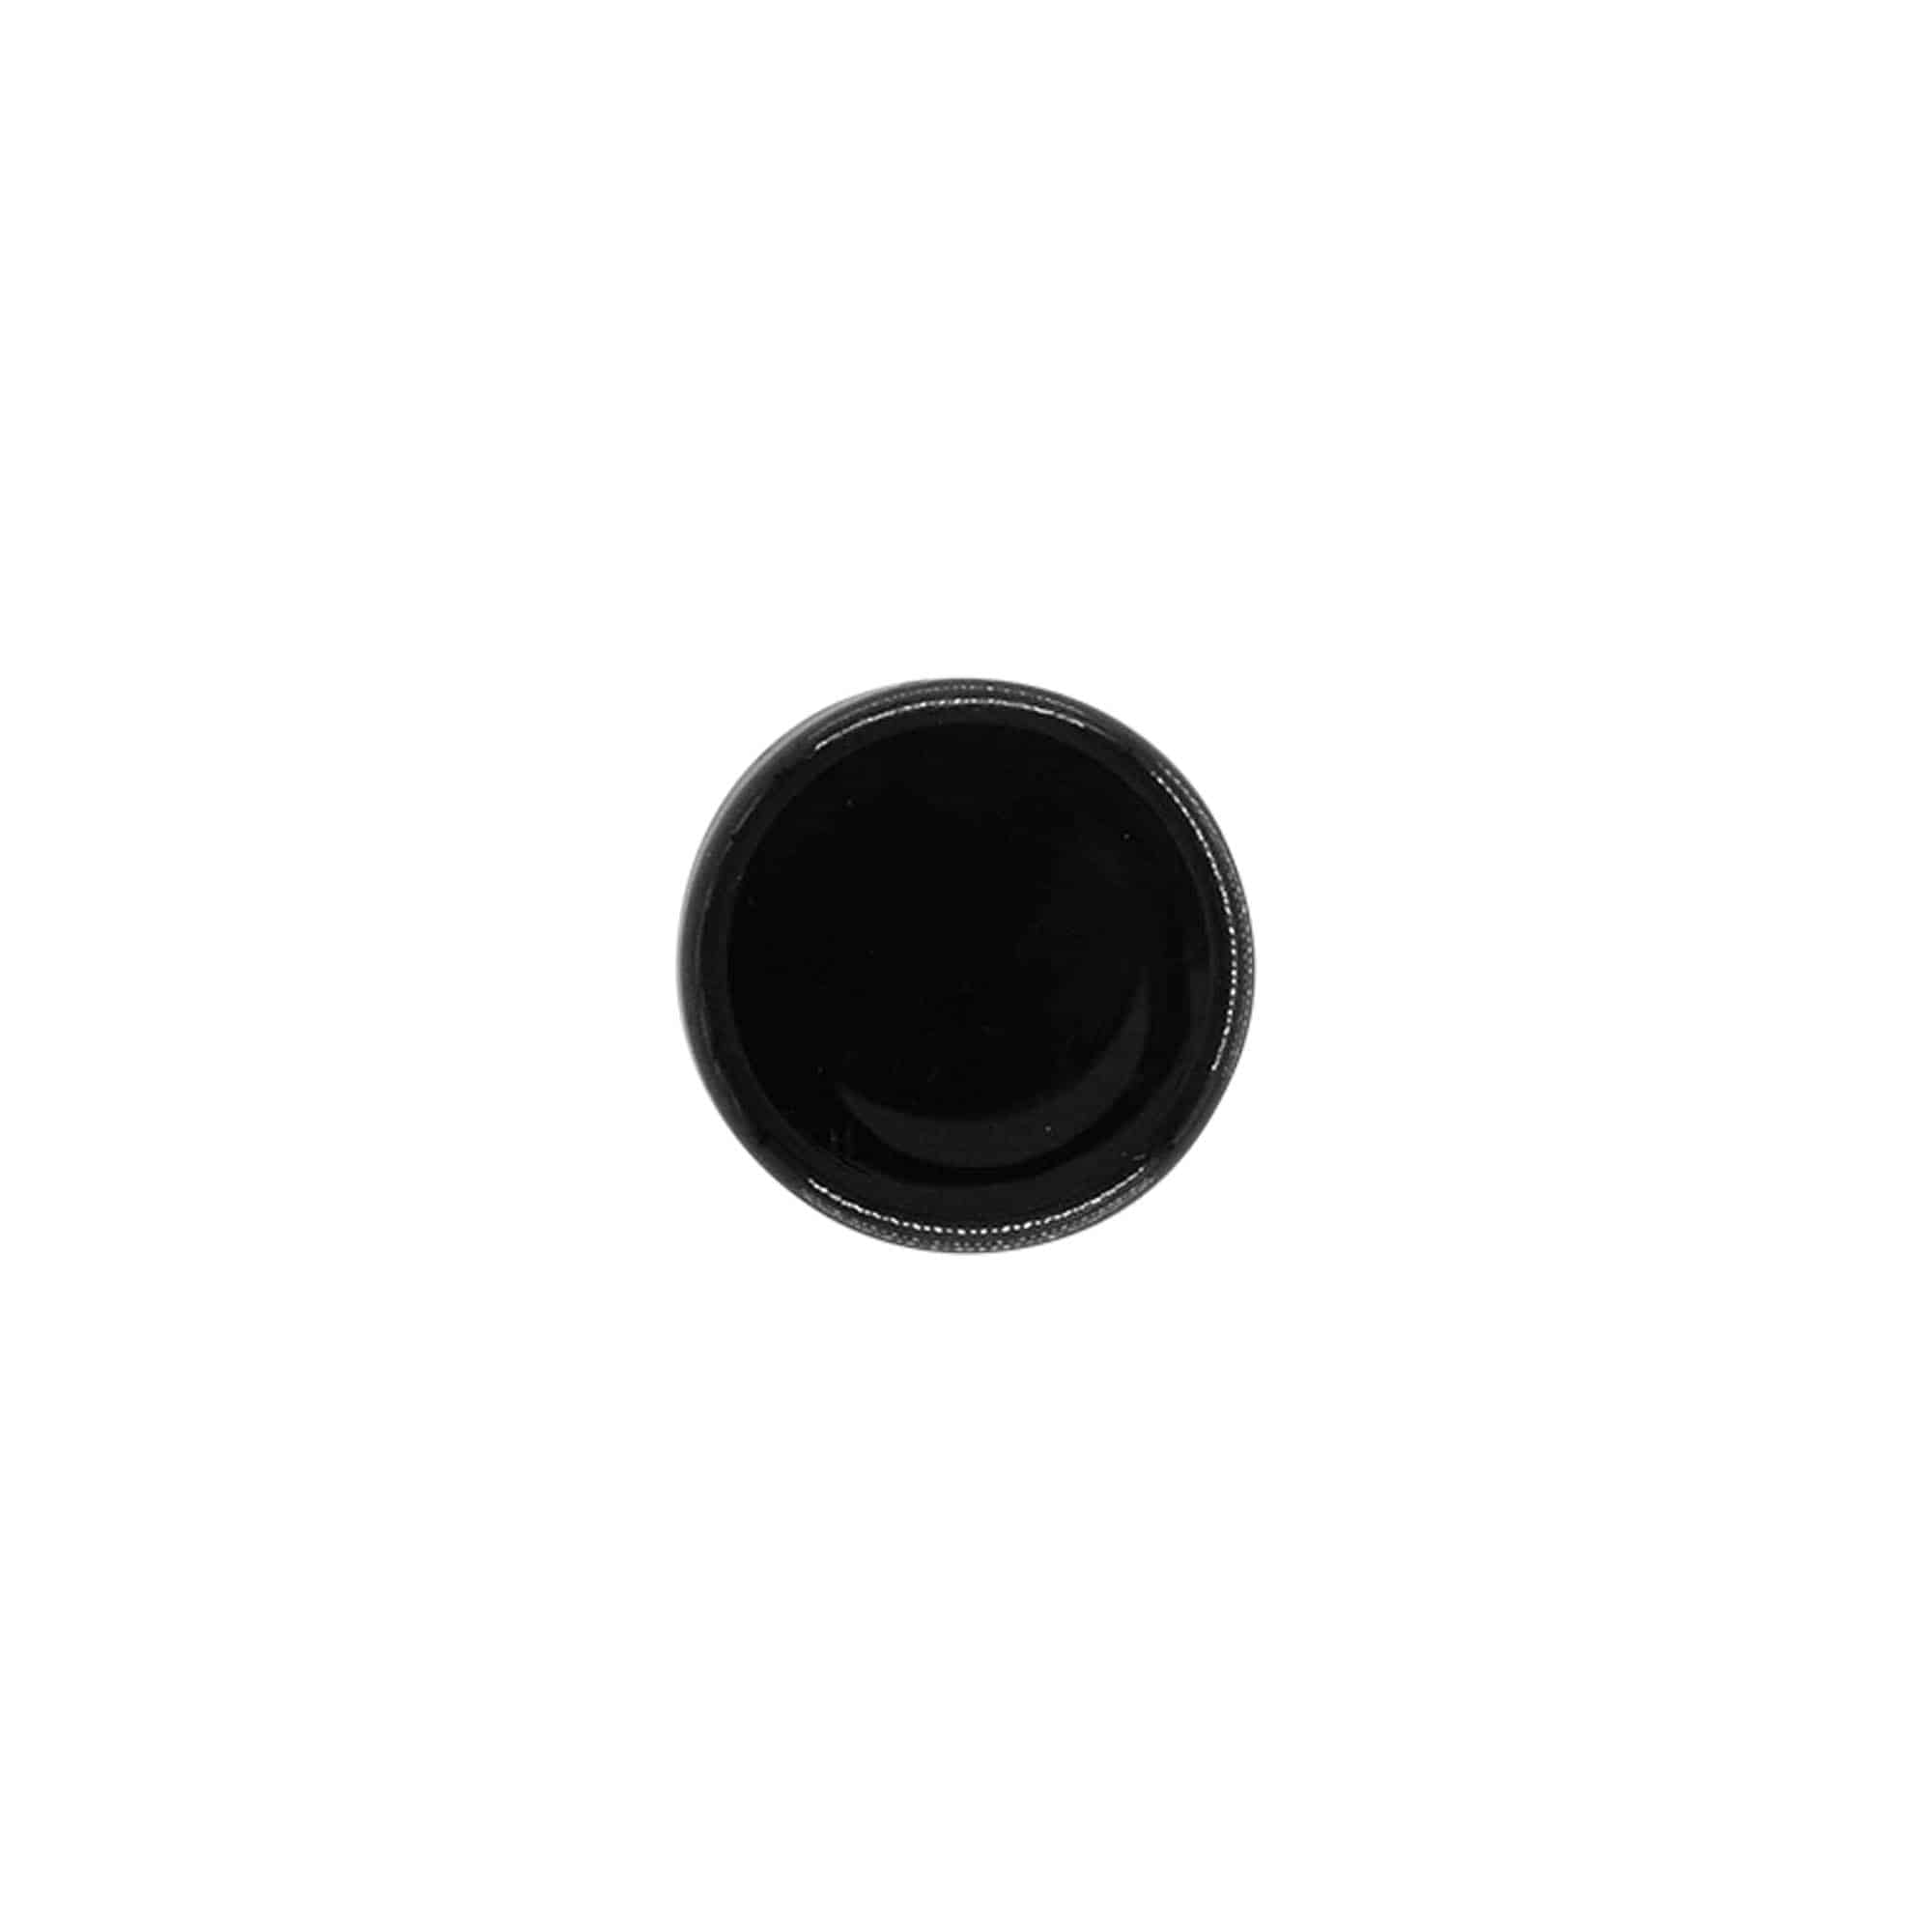 Zakrętka, tworzywo sztuczne PP, kolor czarny, do zamknięcia: GPI 20/410